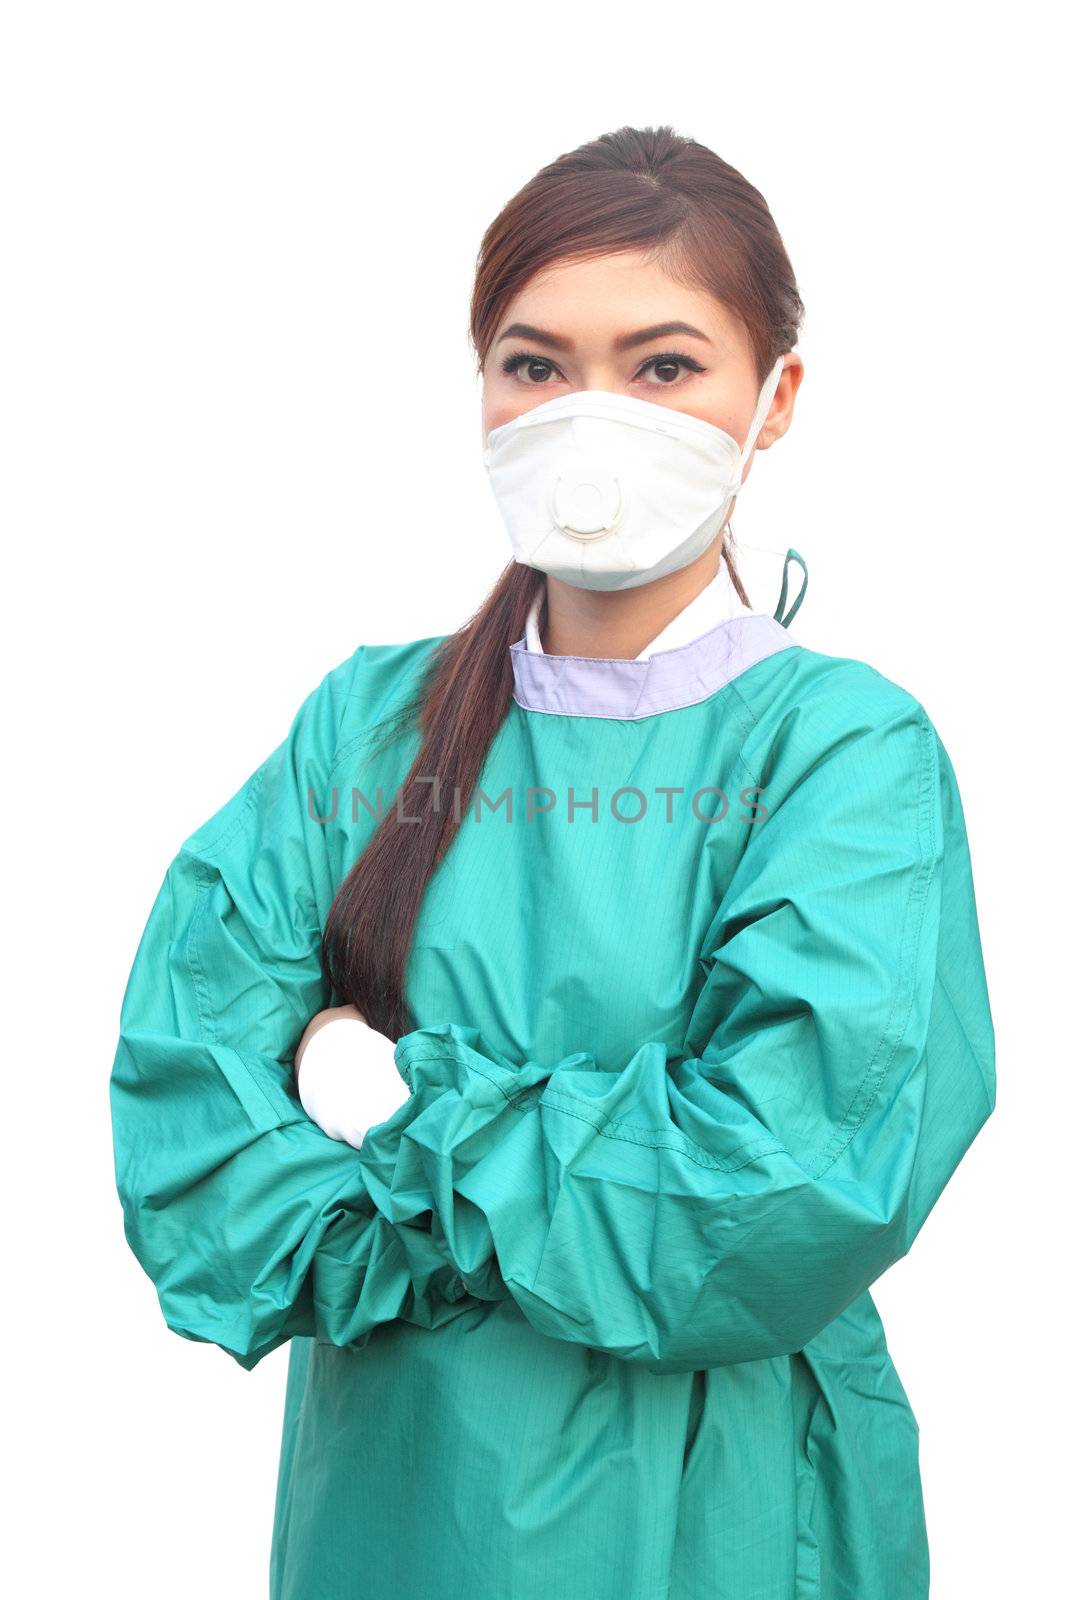 female doctor wearing a green scrubs by geargodz